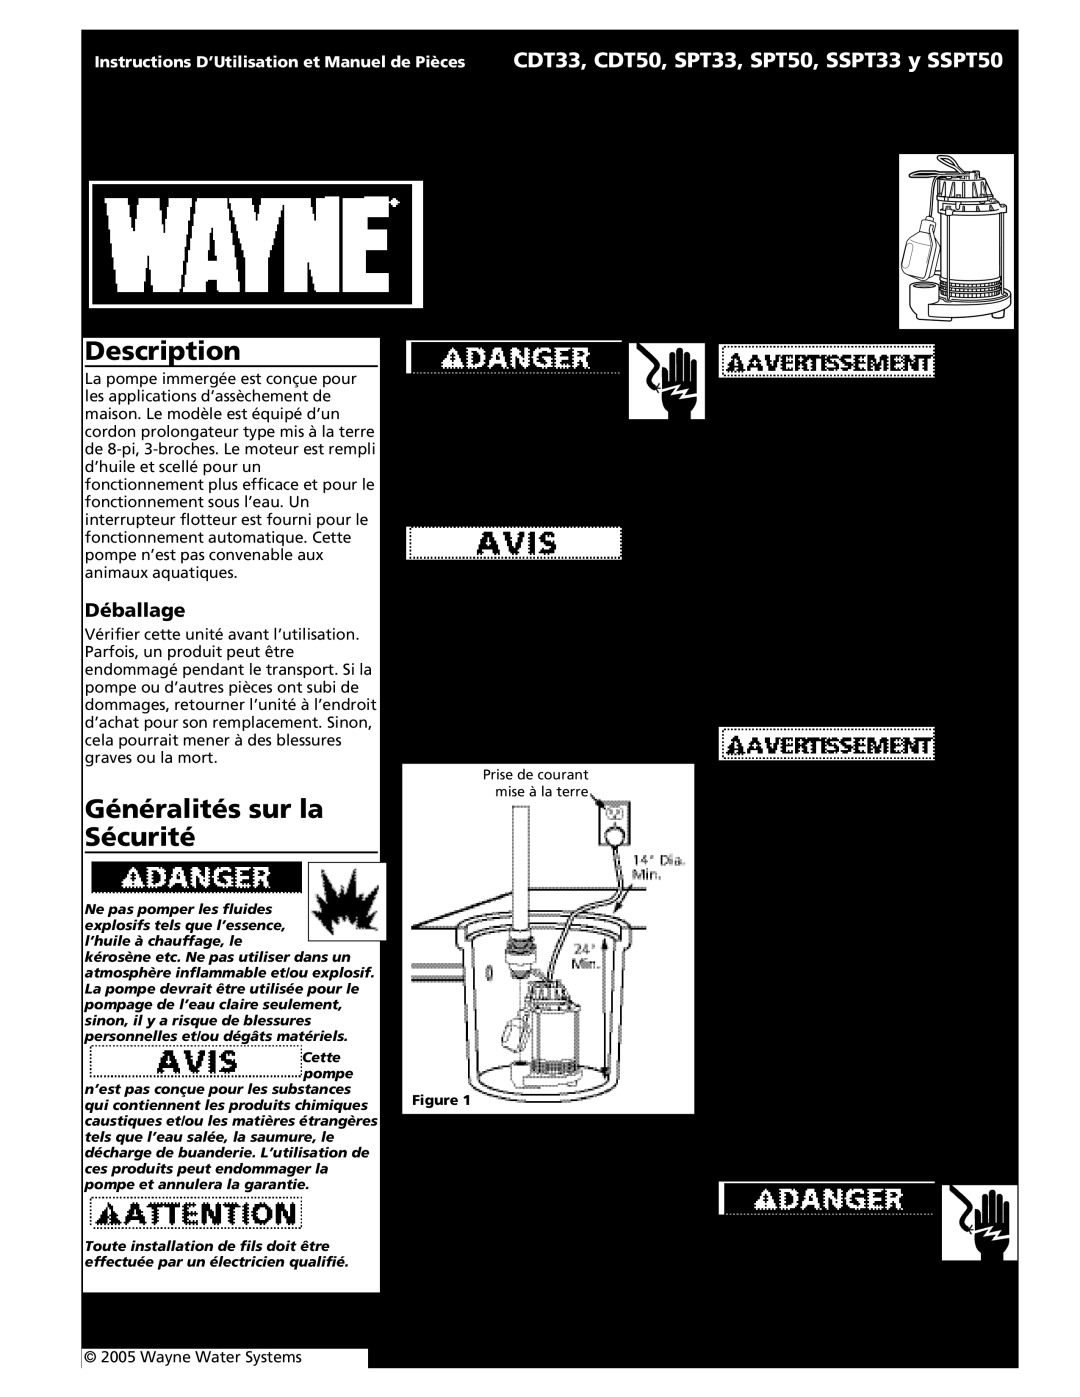 Wayne CDT33 Pompe De Puisard Immergée, Généralités sur la Sécurité, Fonctionnement, Déballage, Description, Installation 